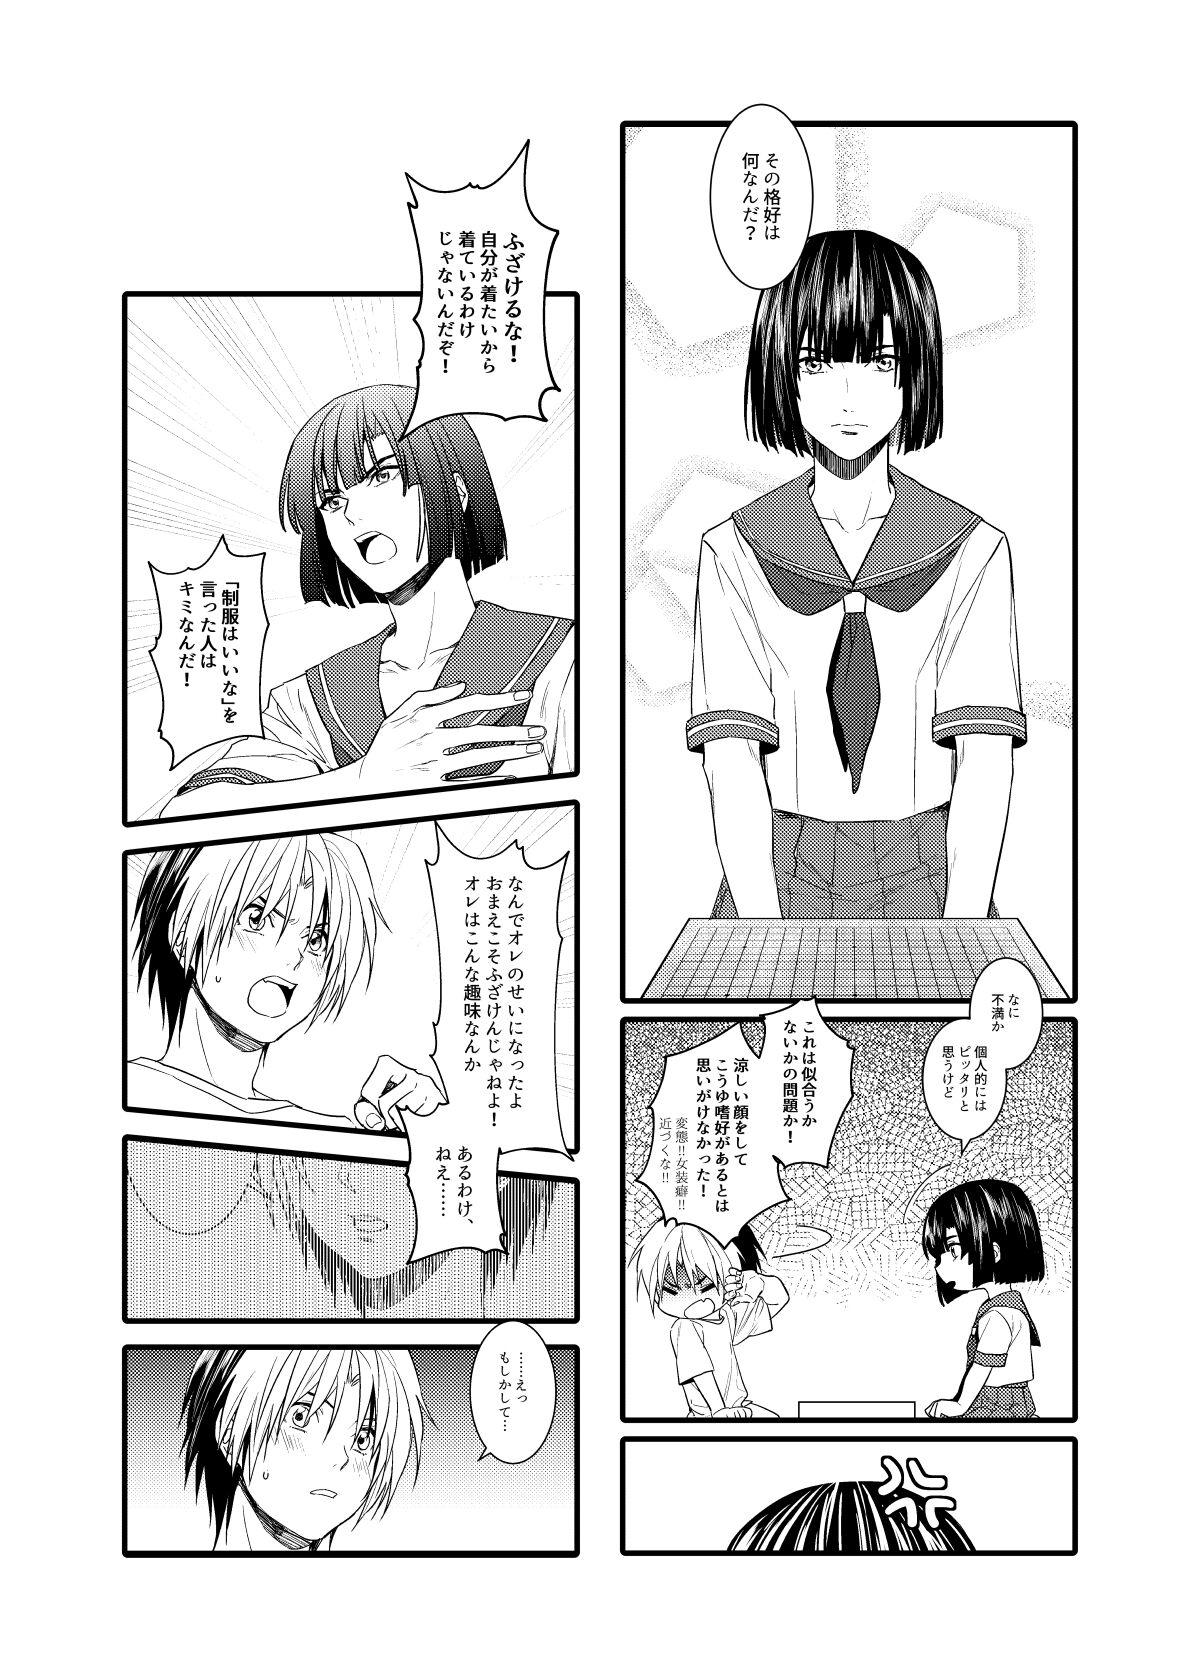 Leaked Saikyou ♂ Kanojo - Hikaru no go Chunky - Page 3